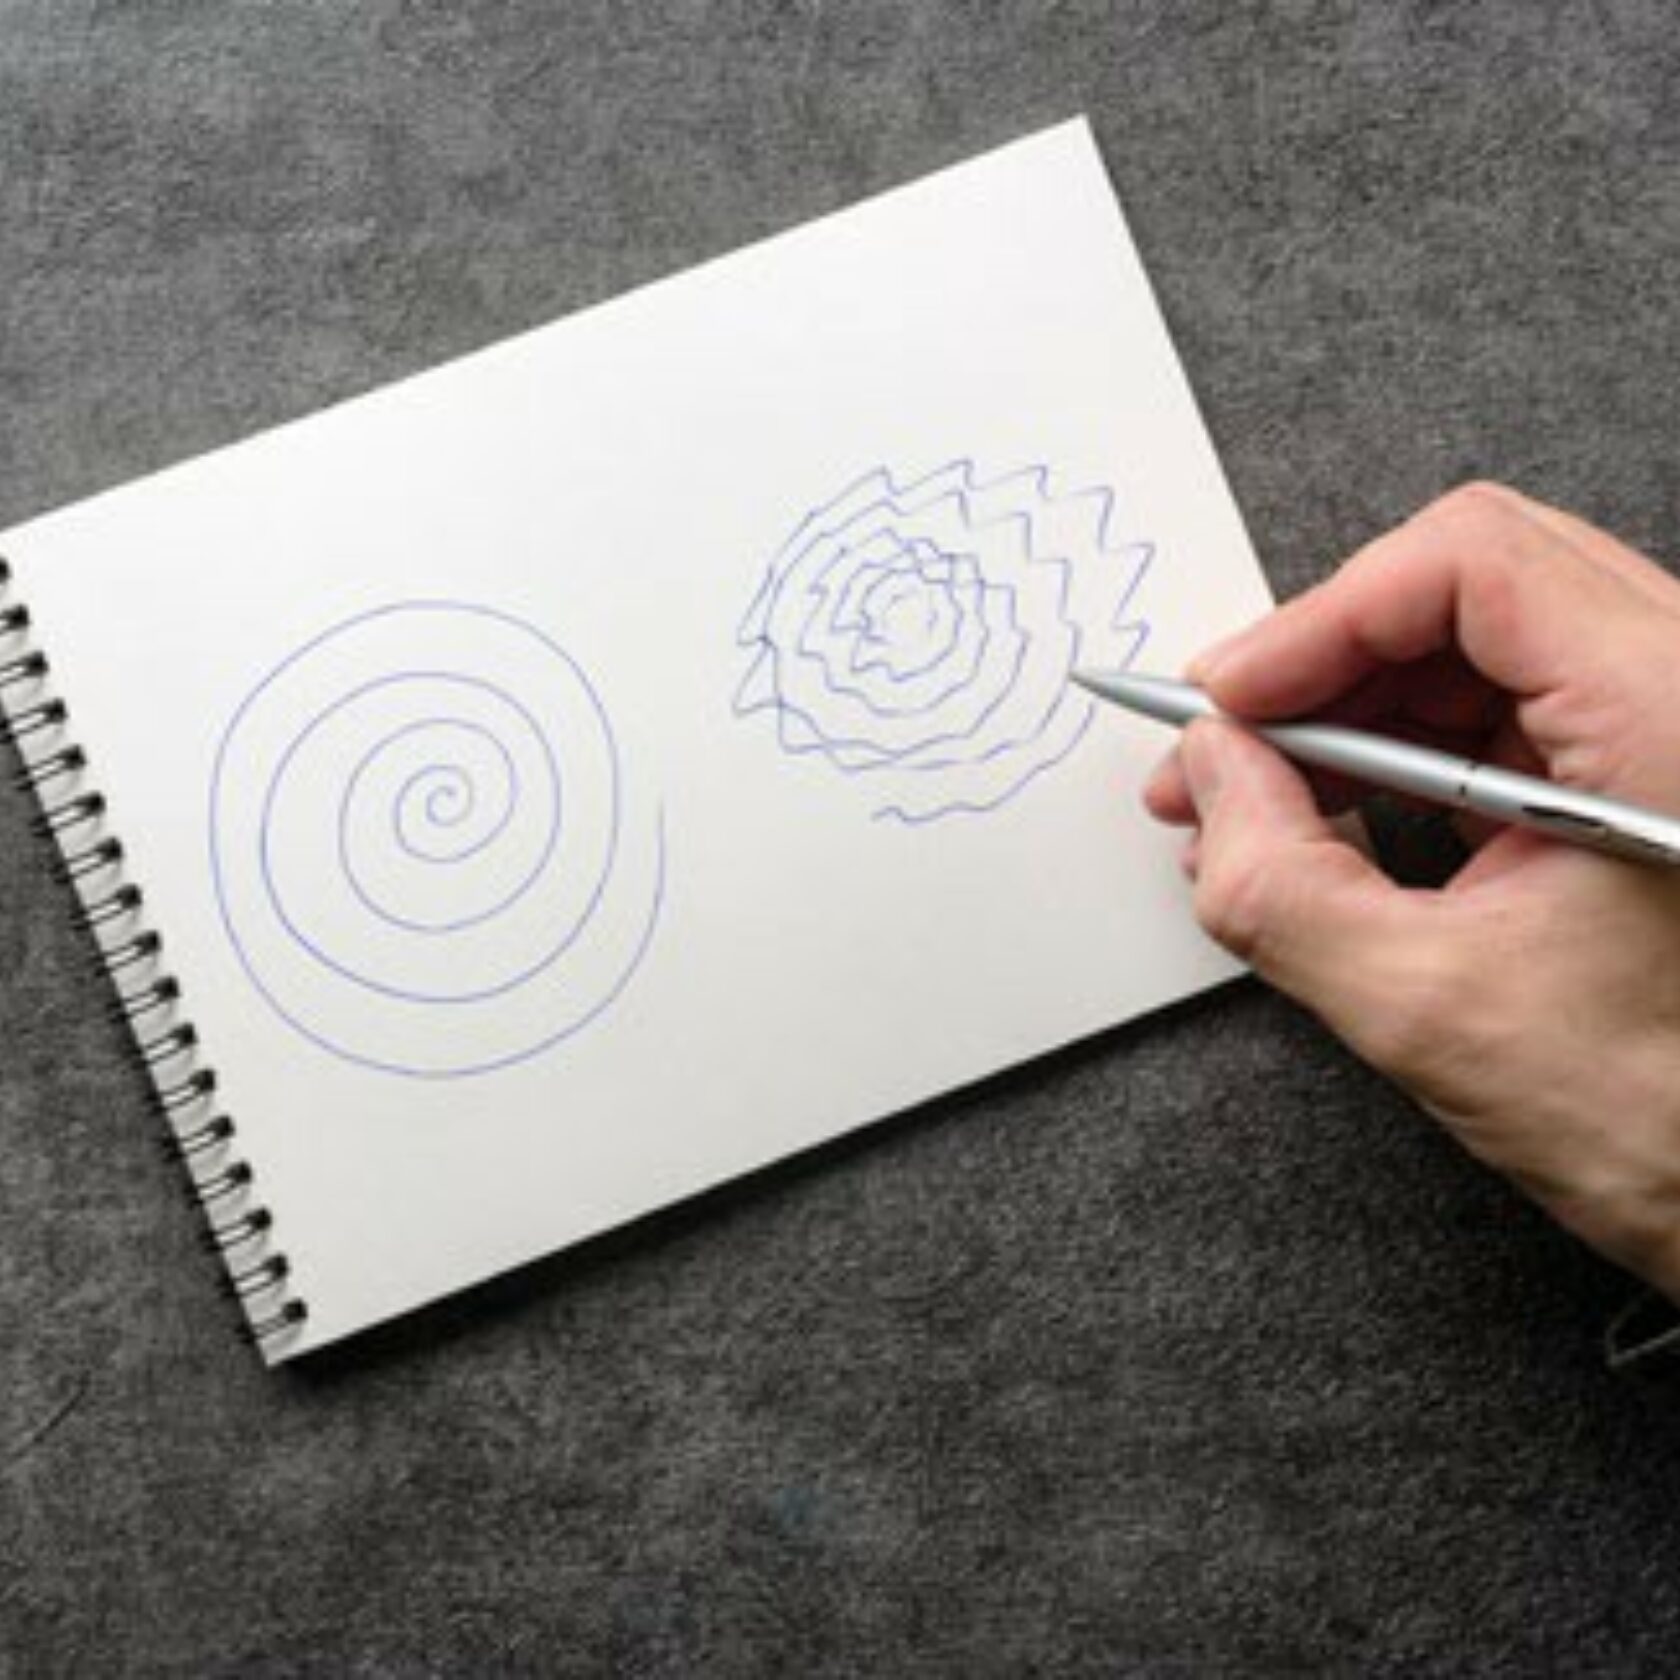 Parkinson-Syndrom: Hand zeichnet statt einer Spirale eine Zickzack-Spirale